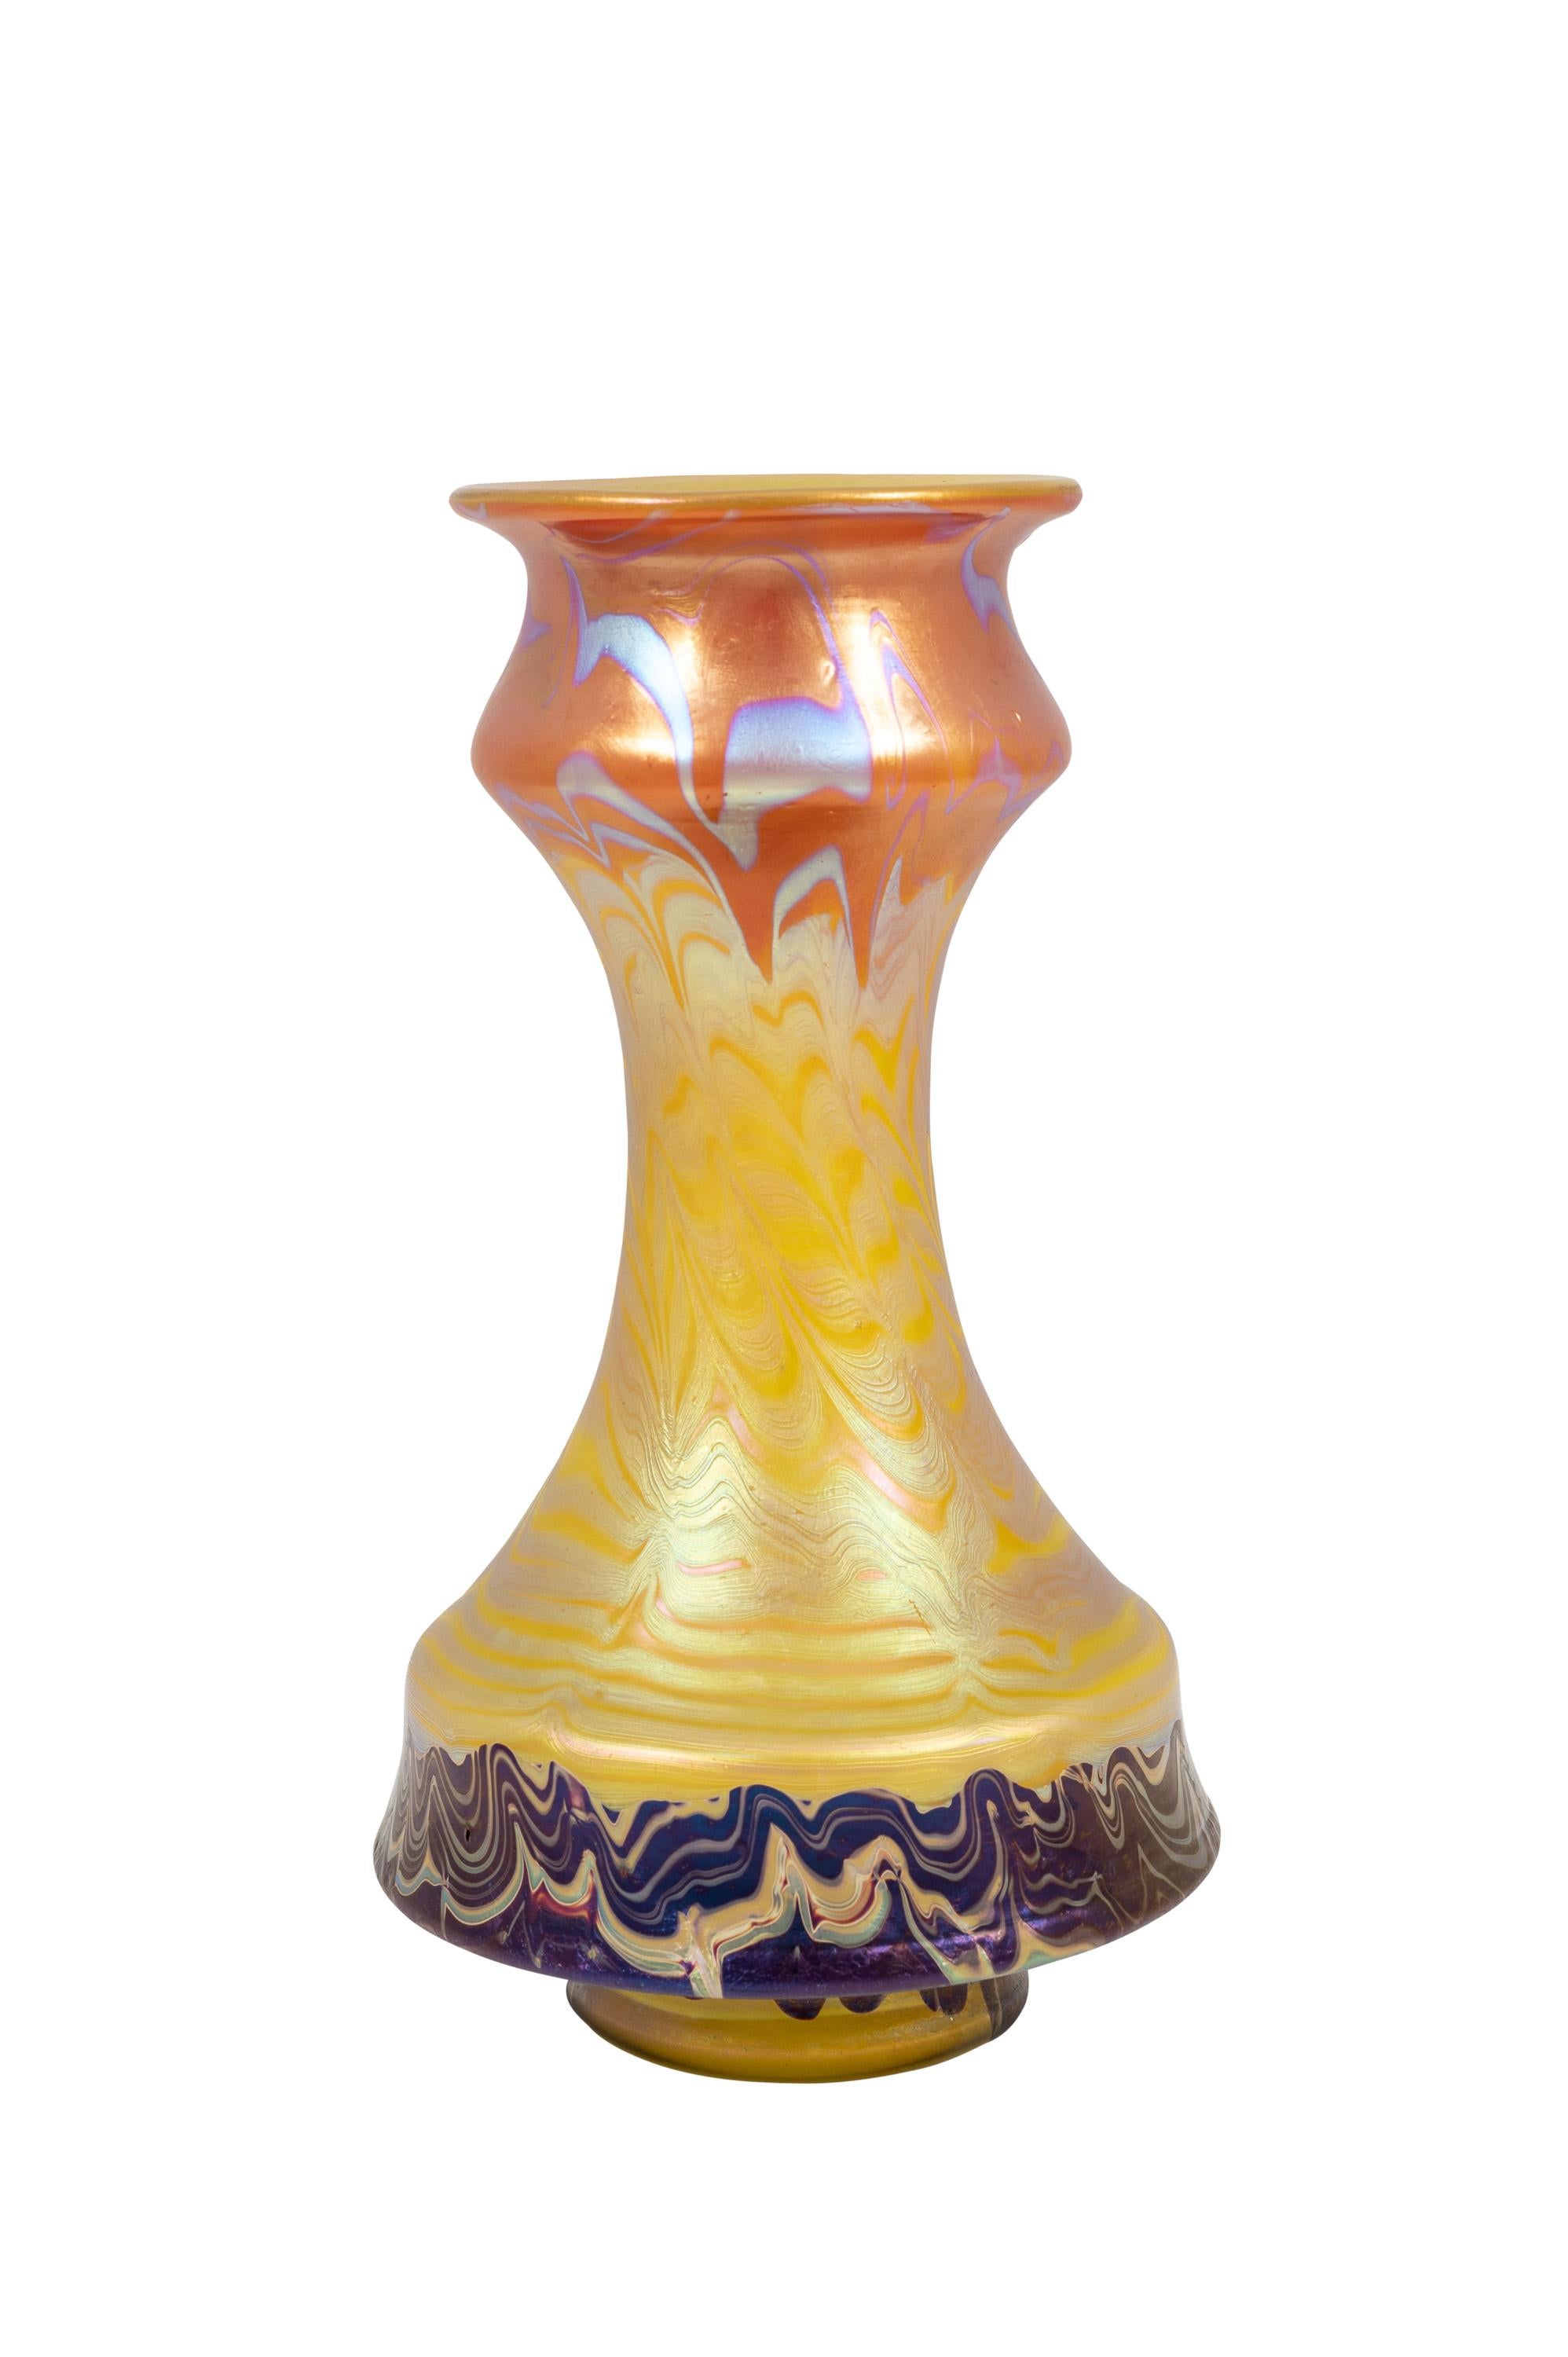 Vase autrichien en verre Jugendstil fabriqué par Johann Loetz Witwe, décor Phenomen Genre 358, vers 1900

Ce vase en verre est un exemple extraordinaire de la capacité de conception de la manufacture Loetz. La décoration Phénomène Genre 358 est